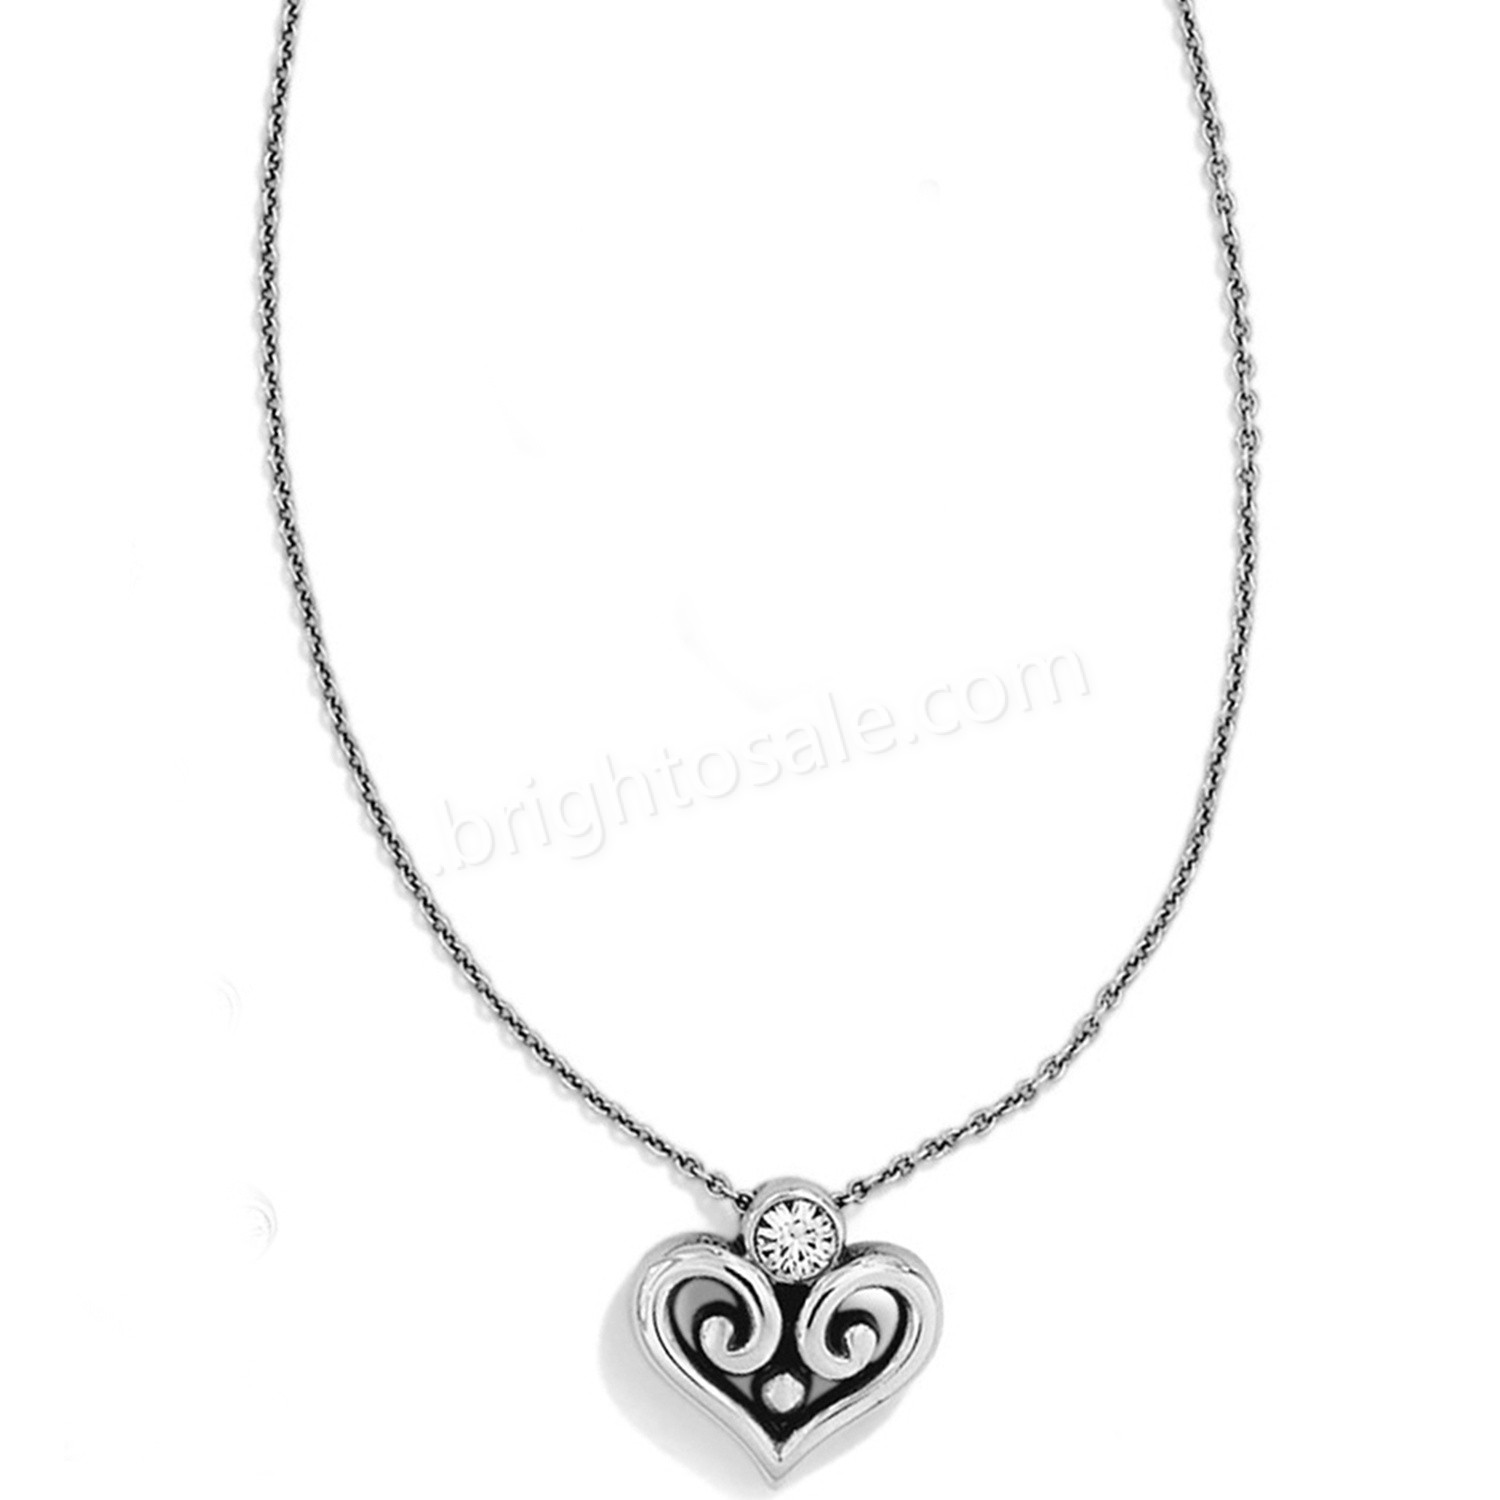 Brighton Collectibles & Online Discount Alcazar Heart Necklace - Brighton Collectibles & Online Discount Alcazar Heart Necklace